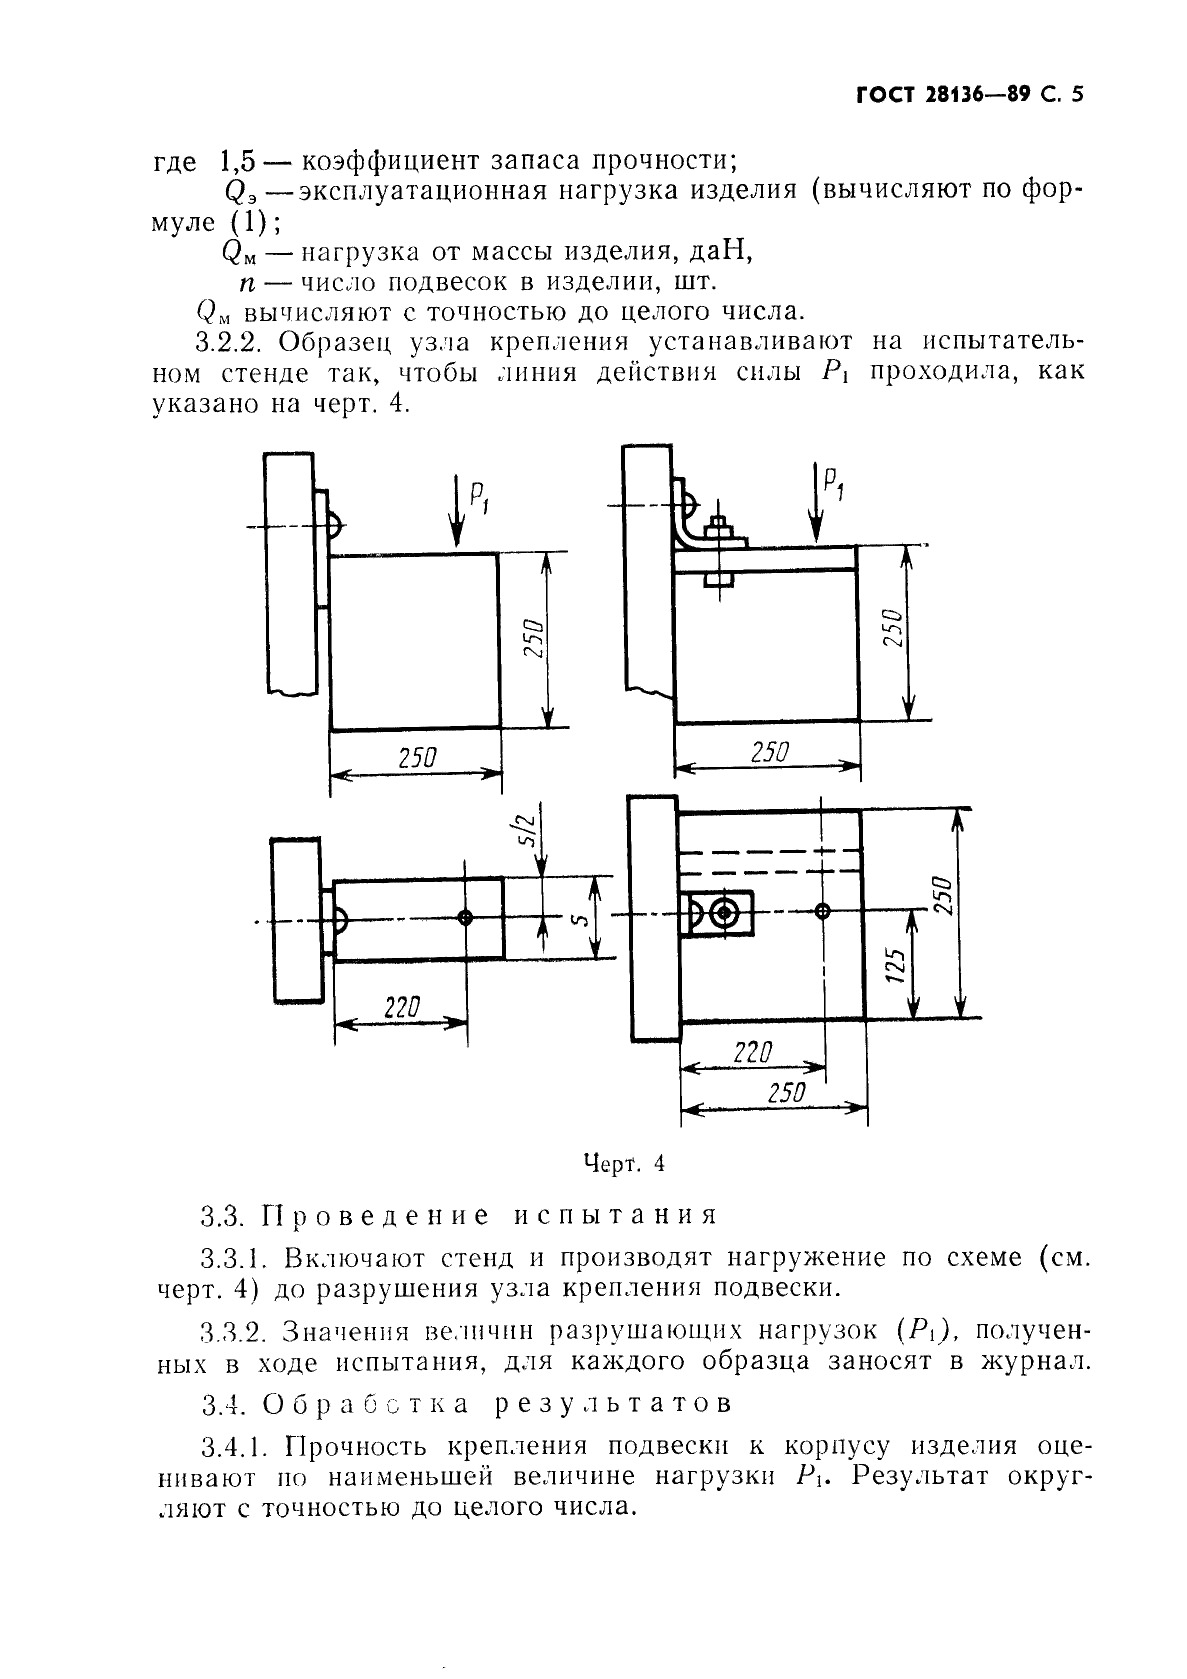 ГОСТ 28136-89 Мебель корпусная настенная. Методы испытания на прочность (фото 6 из 15)